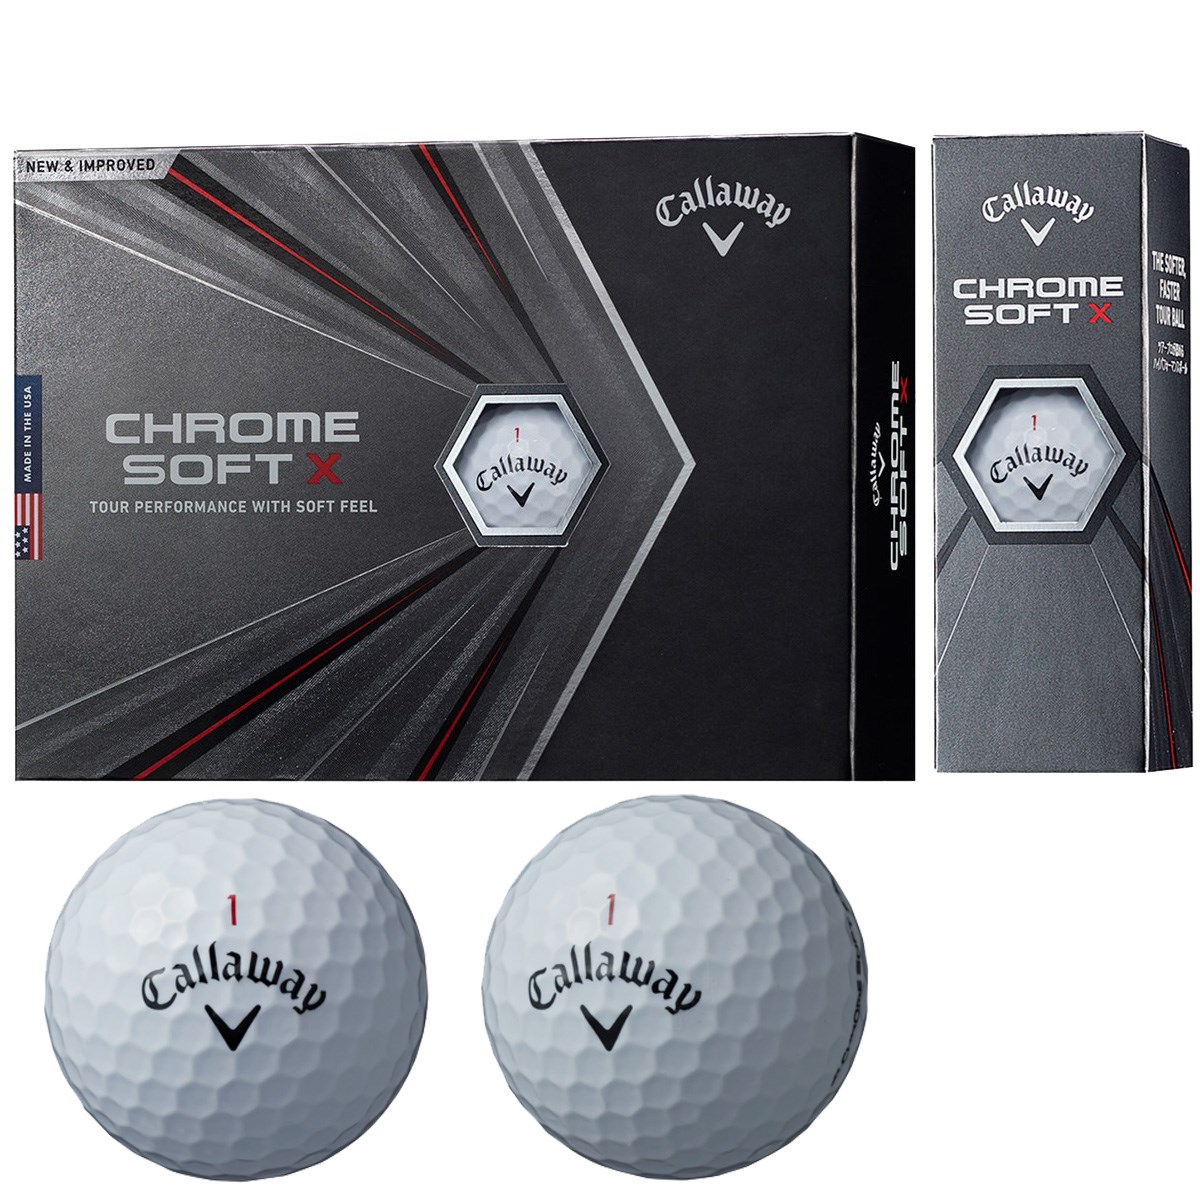 キャロウェイゴルフ(Callaway Golf) CHROME SOFT X ボール 